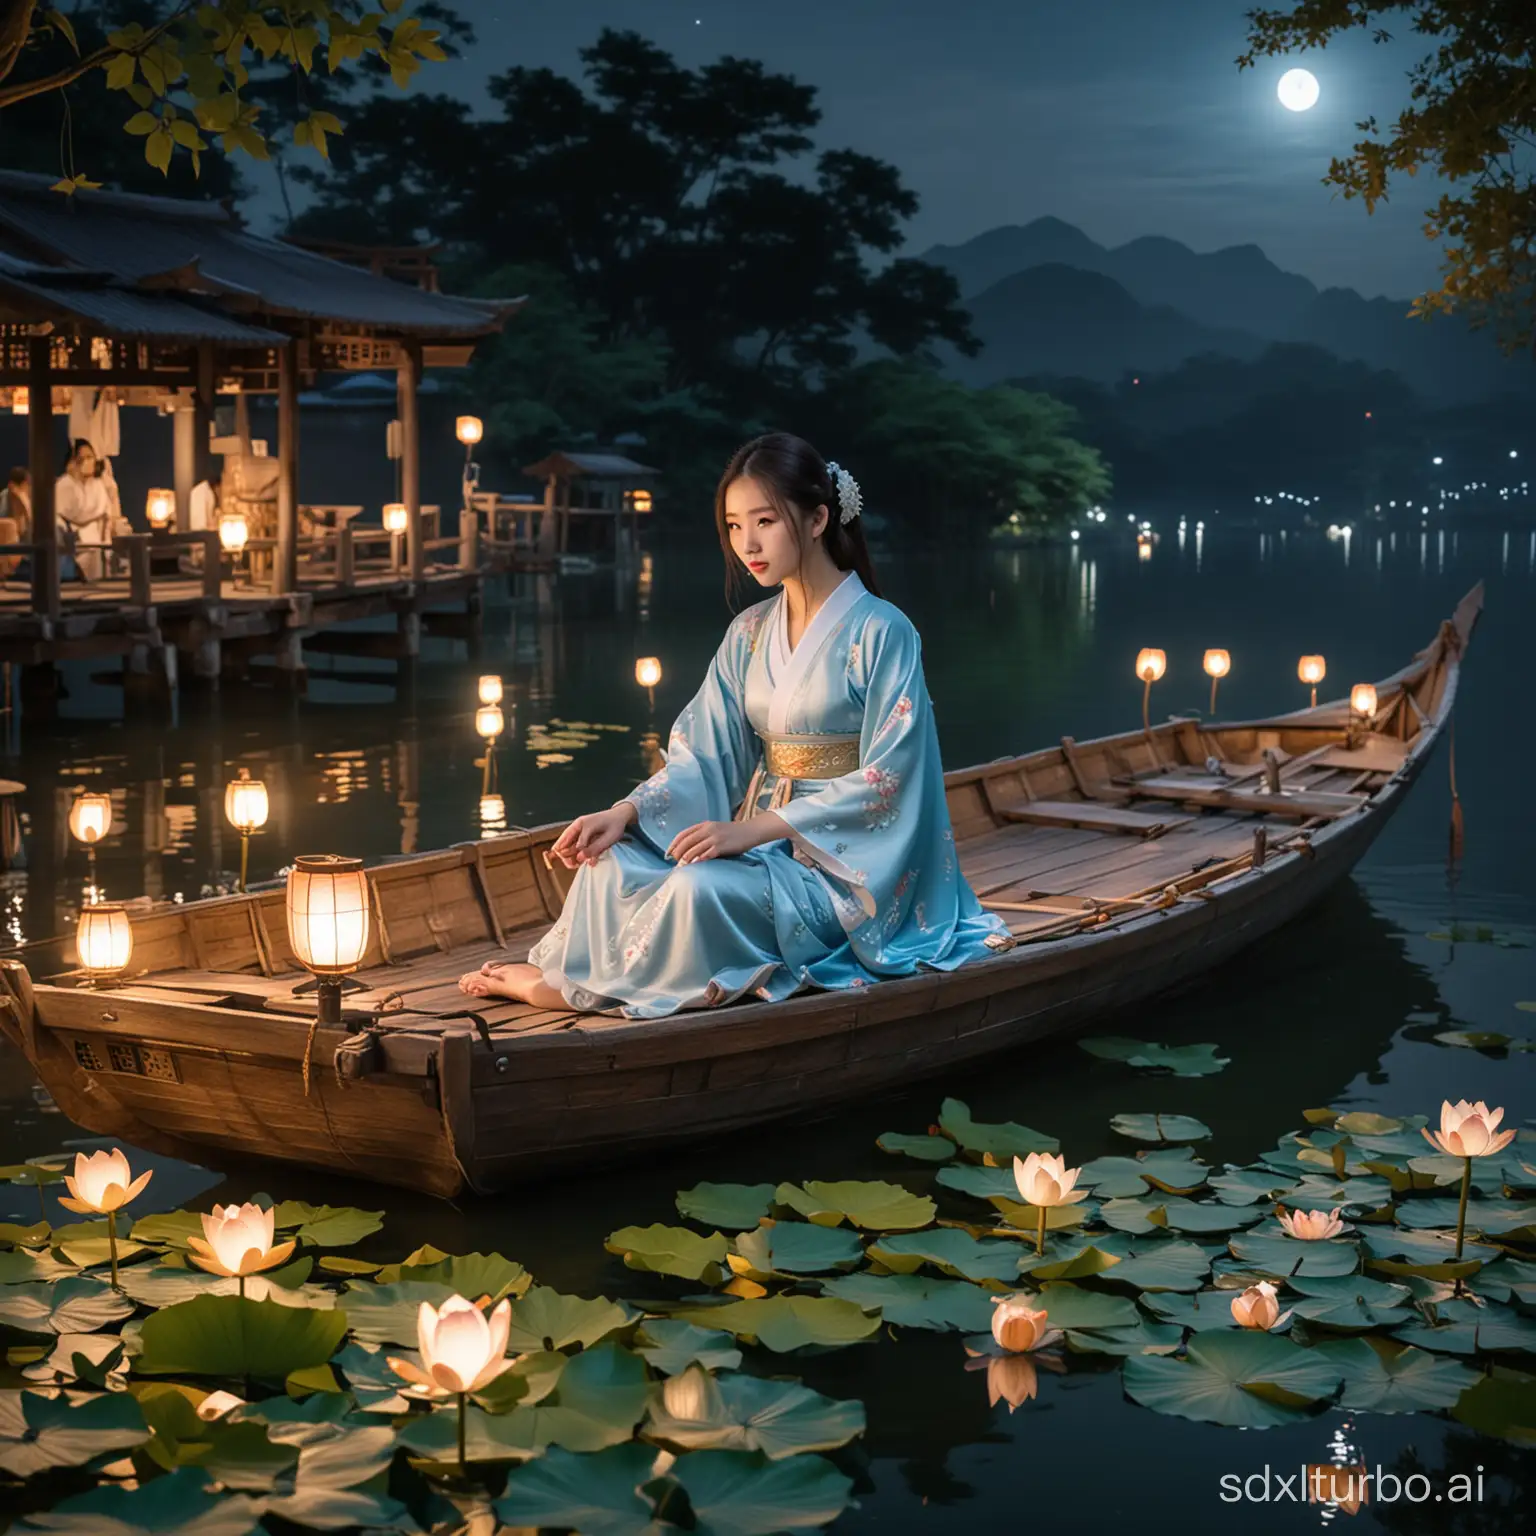 夜晚一位穿着浅蓝色汉服的少女坐在渔船上，渔船周围有荷花、荷叶和河灯，渔船后面有一座木桥横跨整个画面。能够看到少女的正脸。